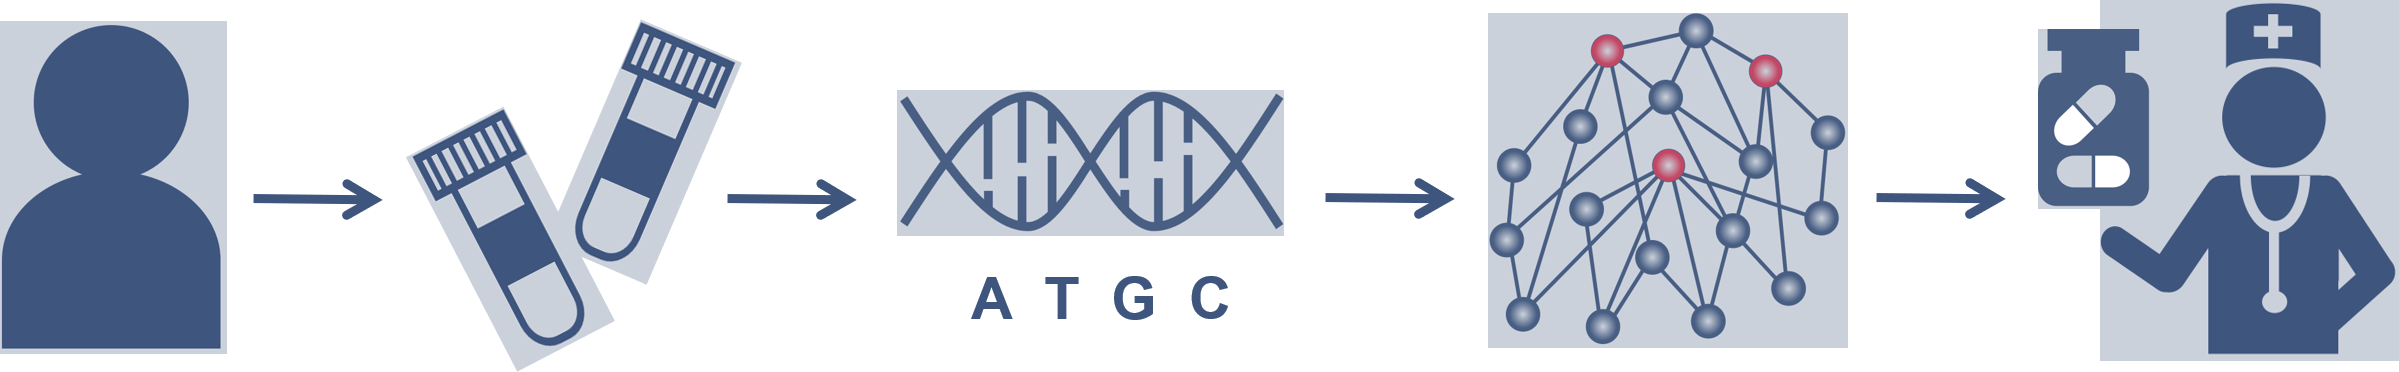 Genome Enhancer